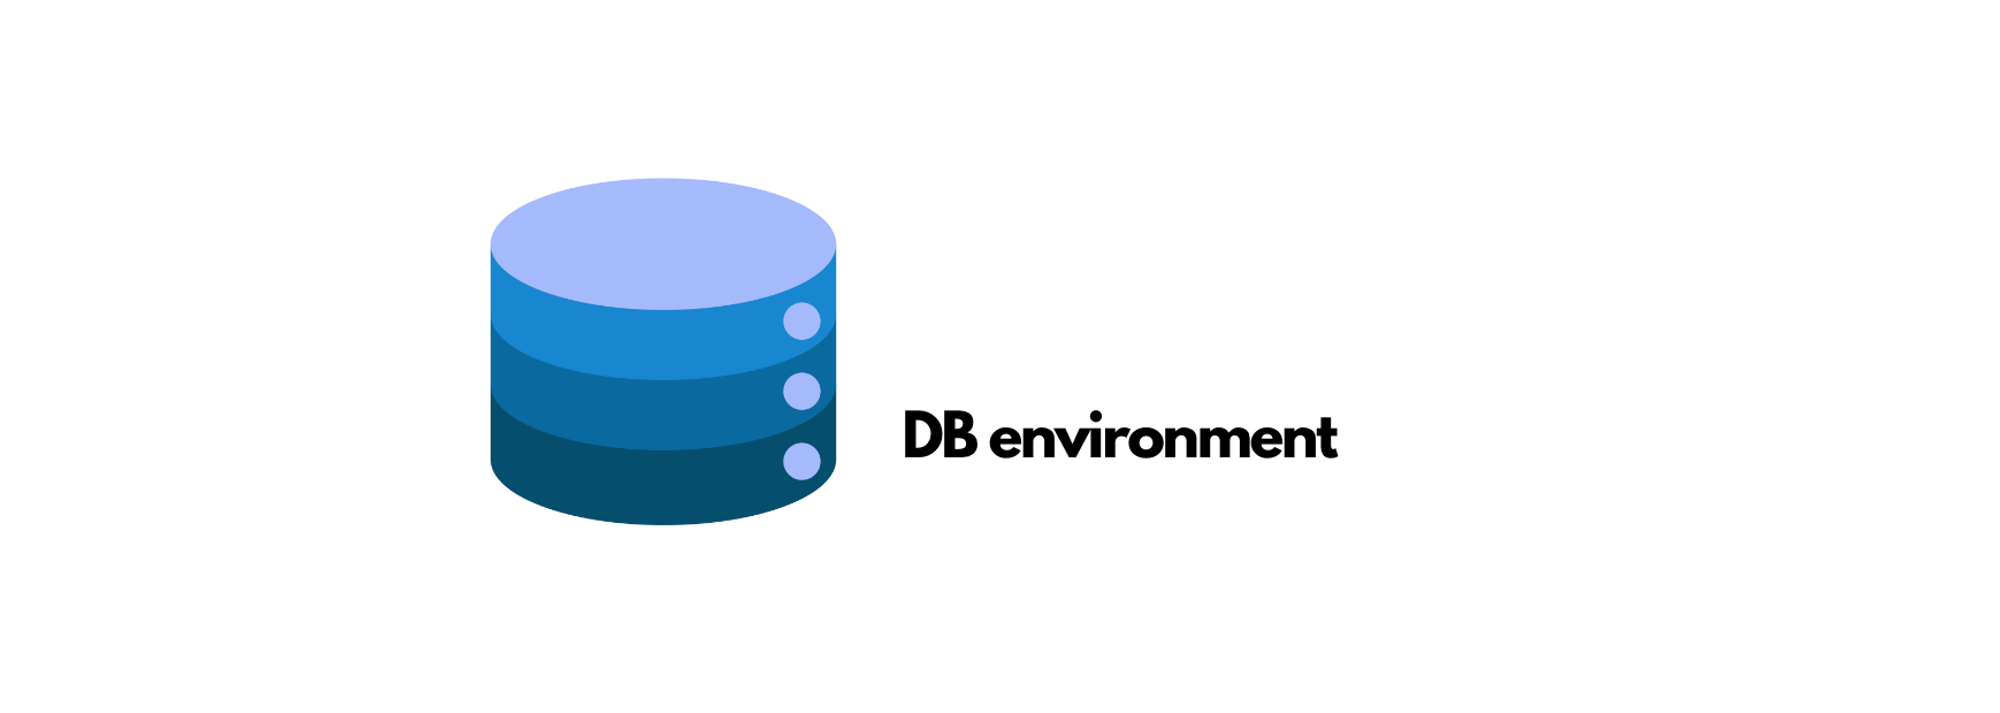 DB environment